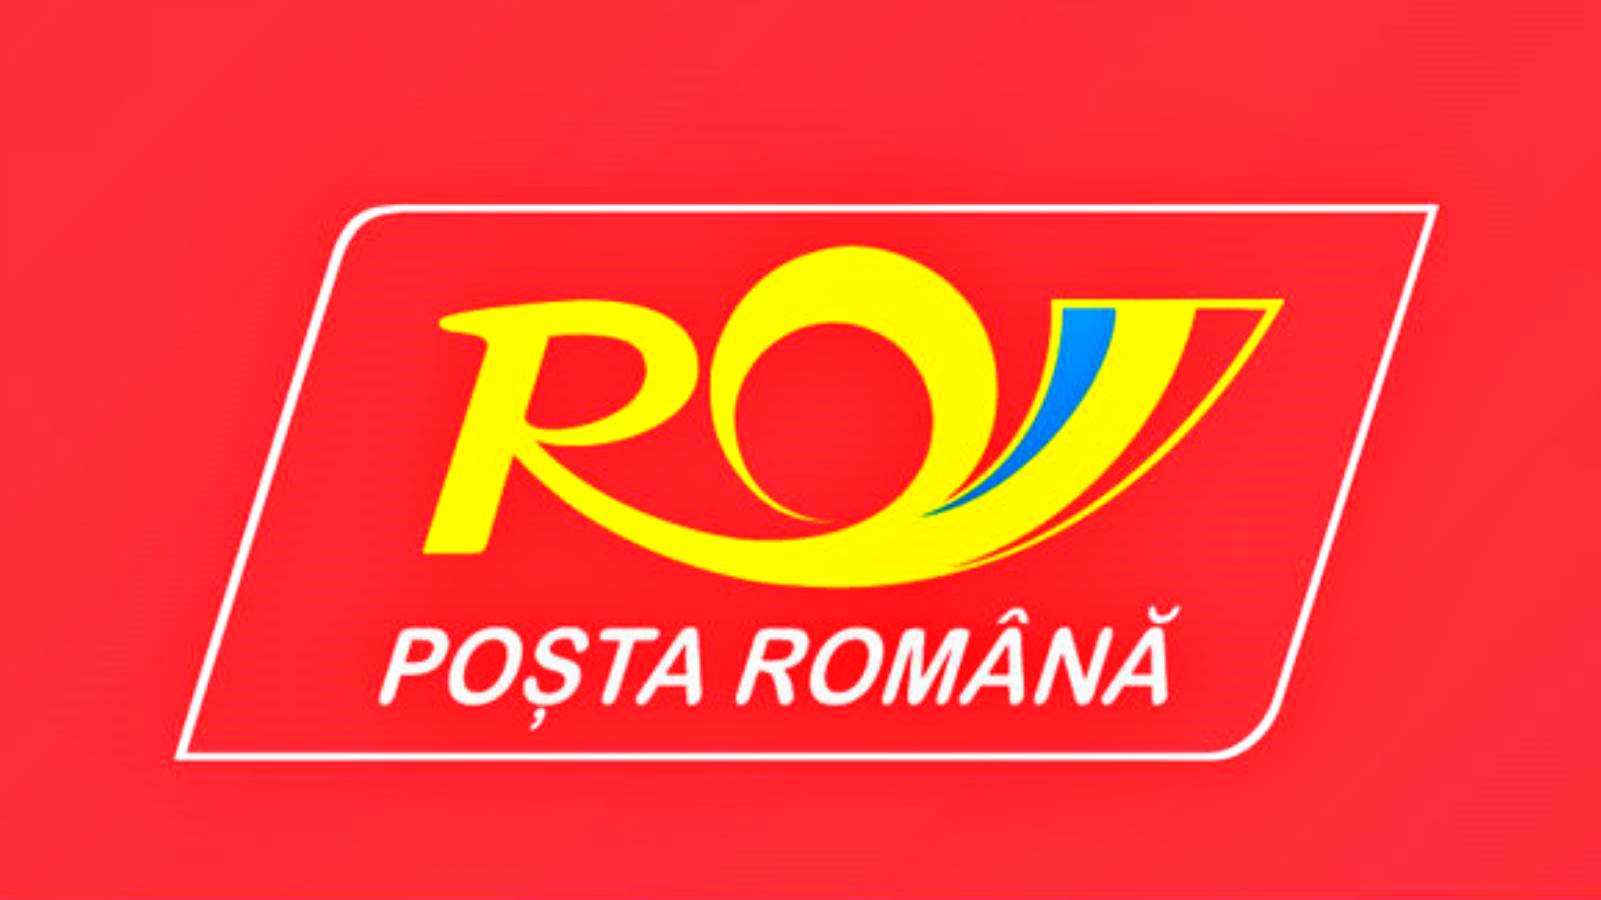 Surprise officielle de la Poste roumaine, qu'elle offre GRATUITEMENT aux Roumains